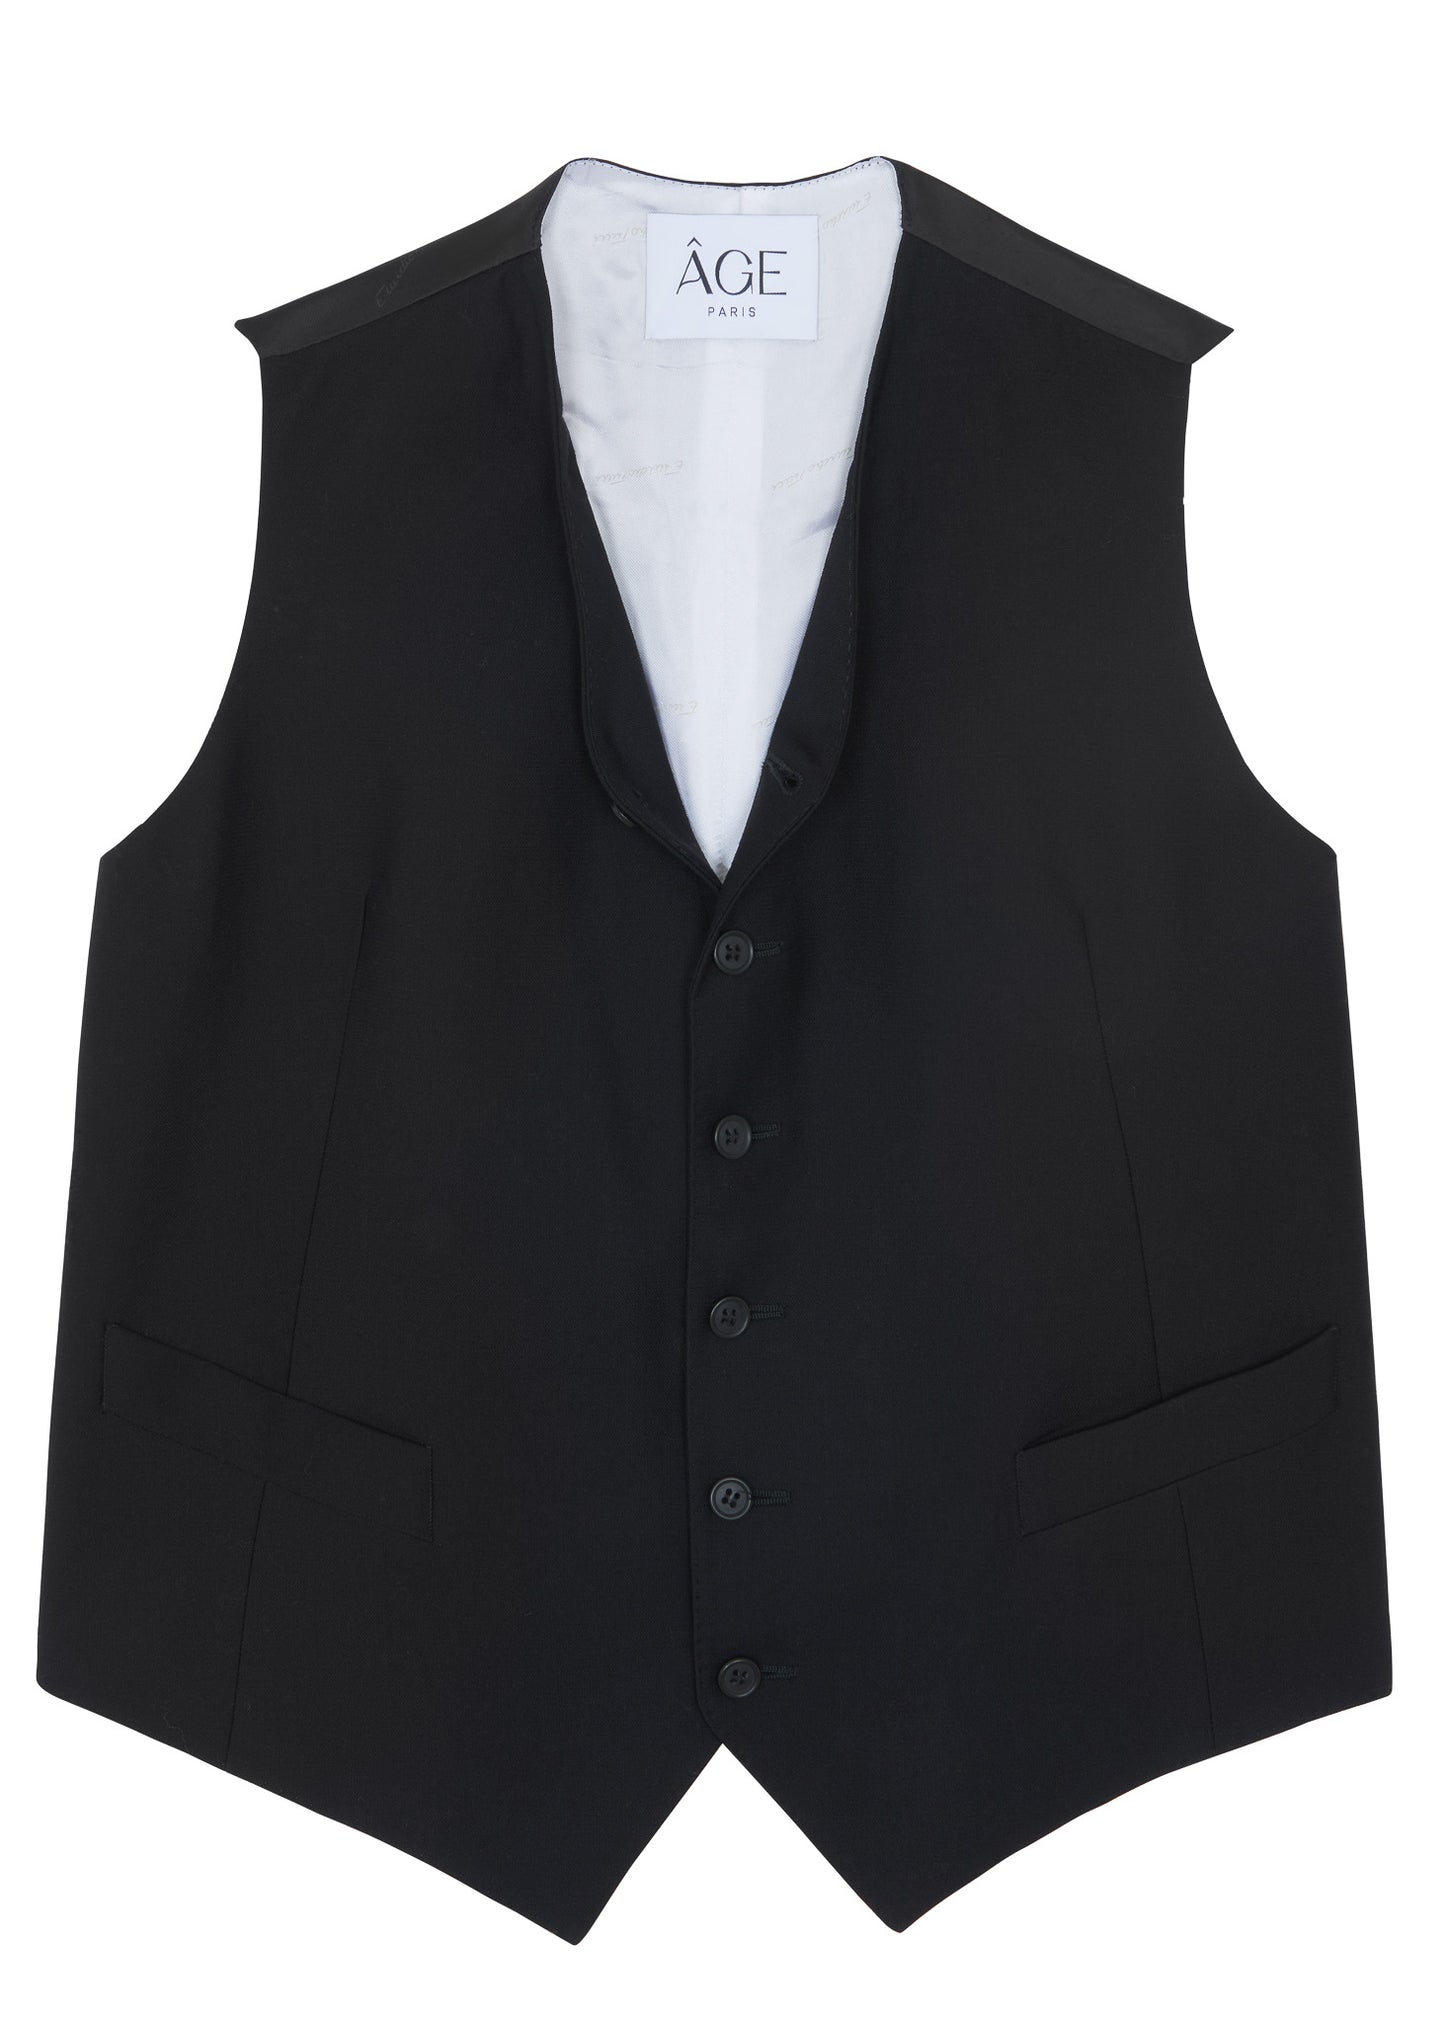 The tuxedo vest